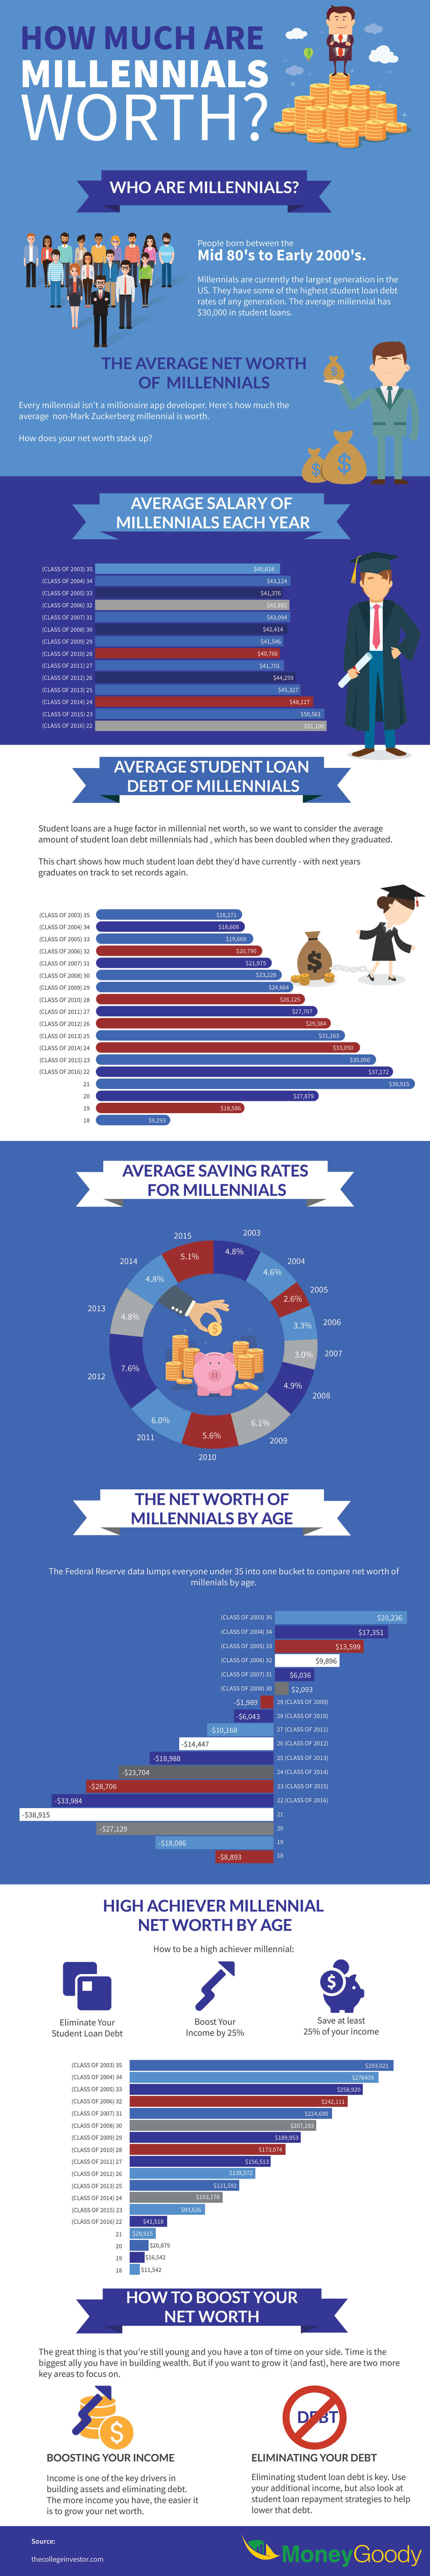 average millennial net worth infographic